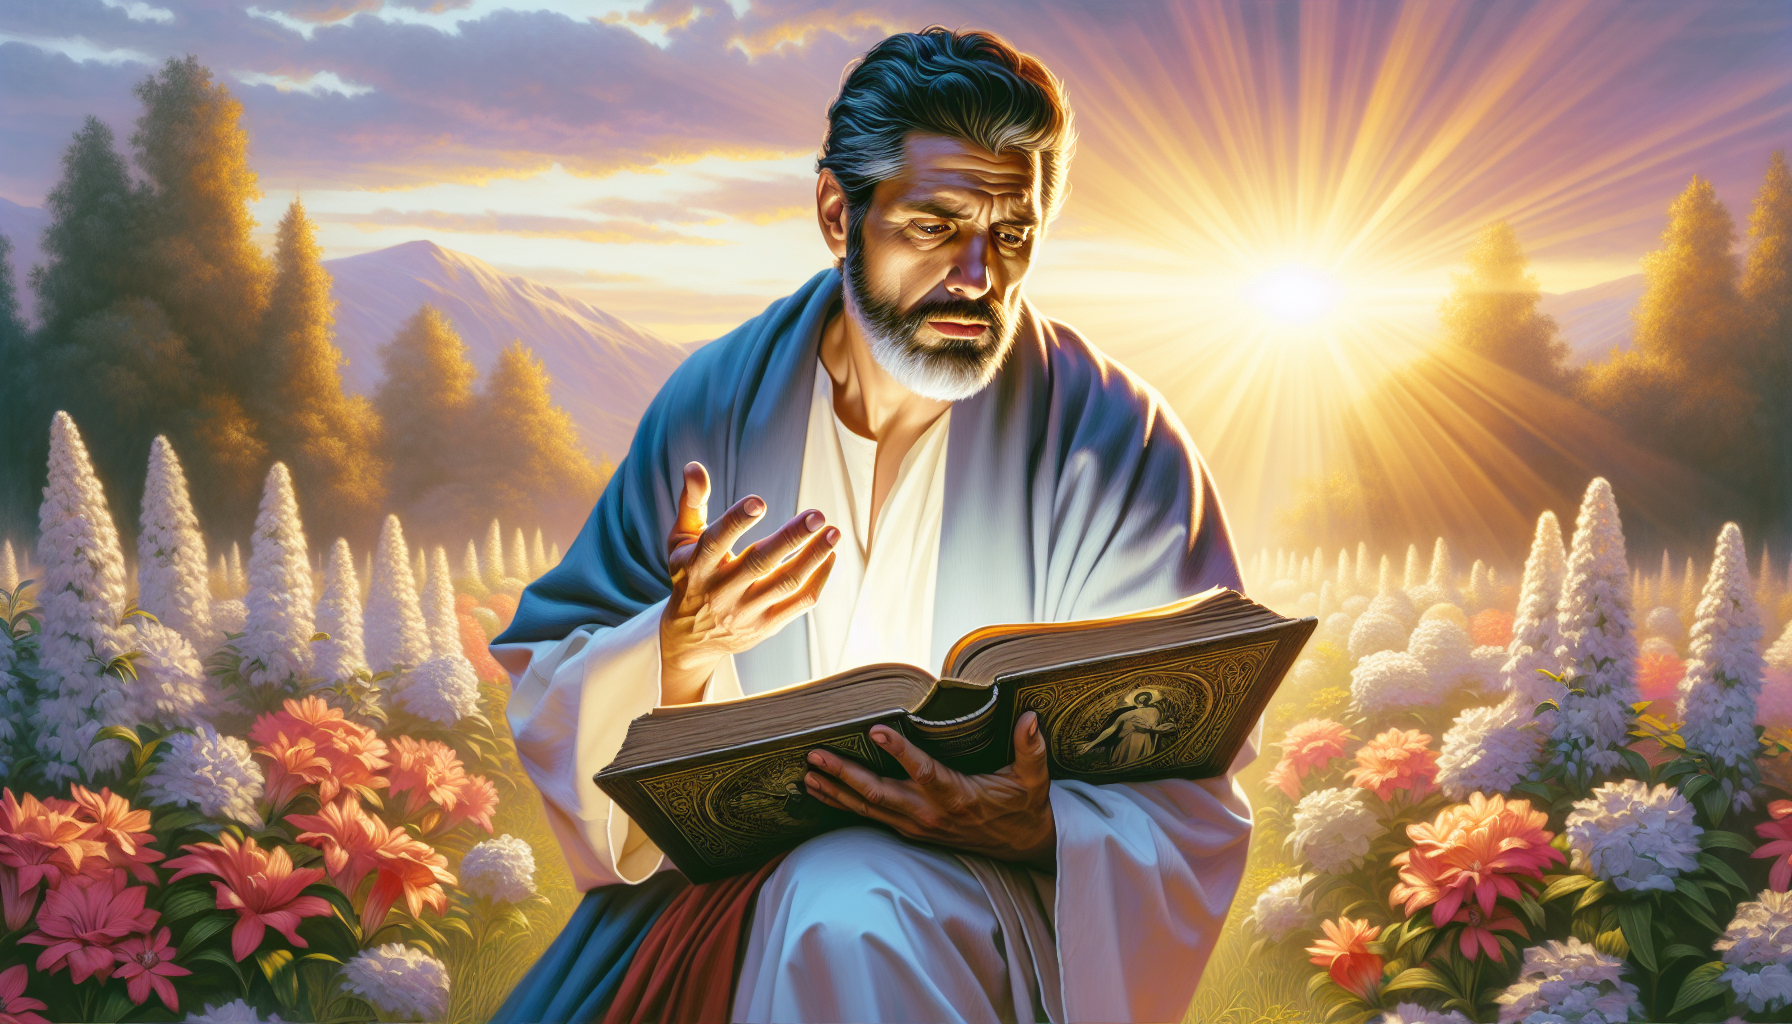 Pedro reflexionando profundamente sobre la resurrección de Jesús en un tranquilo jardín al amanecer, con un libro antiguo abierto en sus manos y una expresión de asombro y contemplación en su rostro,